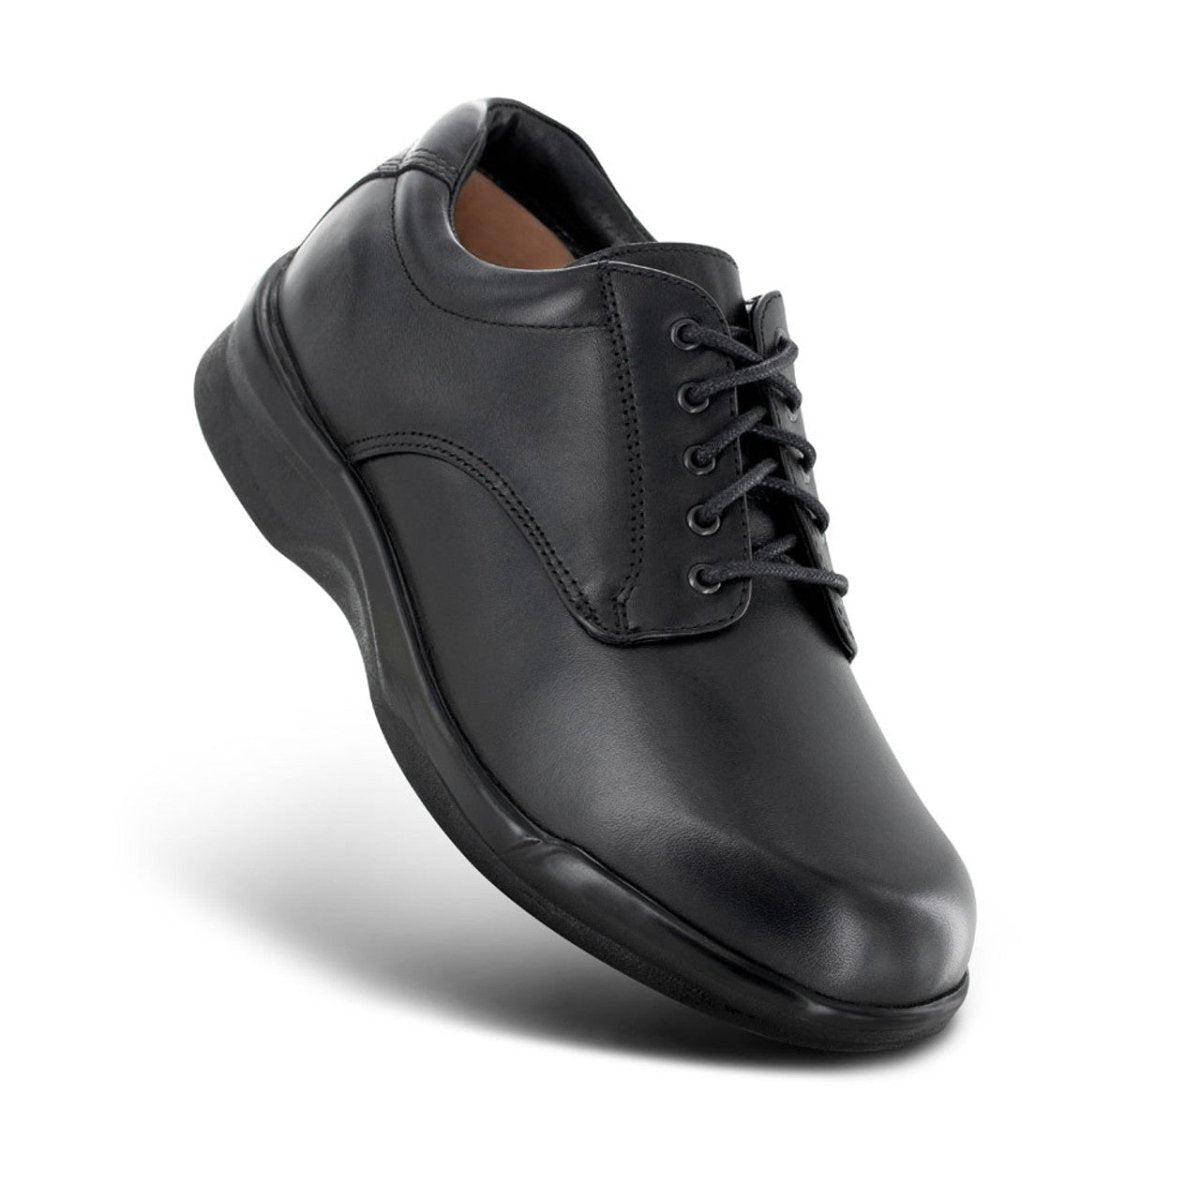 APEX 1270M AMB CONFORM LACE MEN'S DRESS SHOE IN BLACK - TLW Shoes